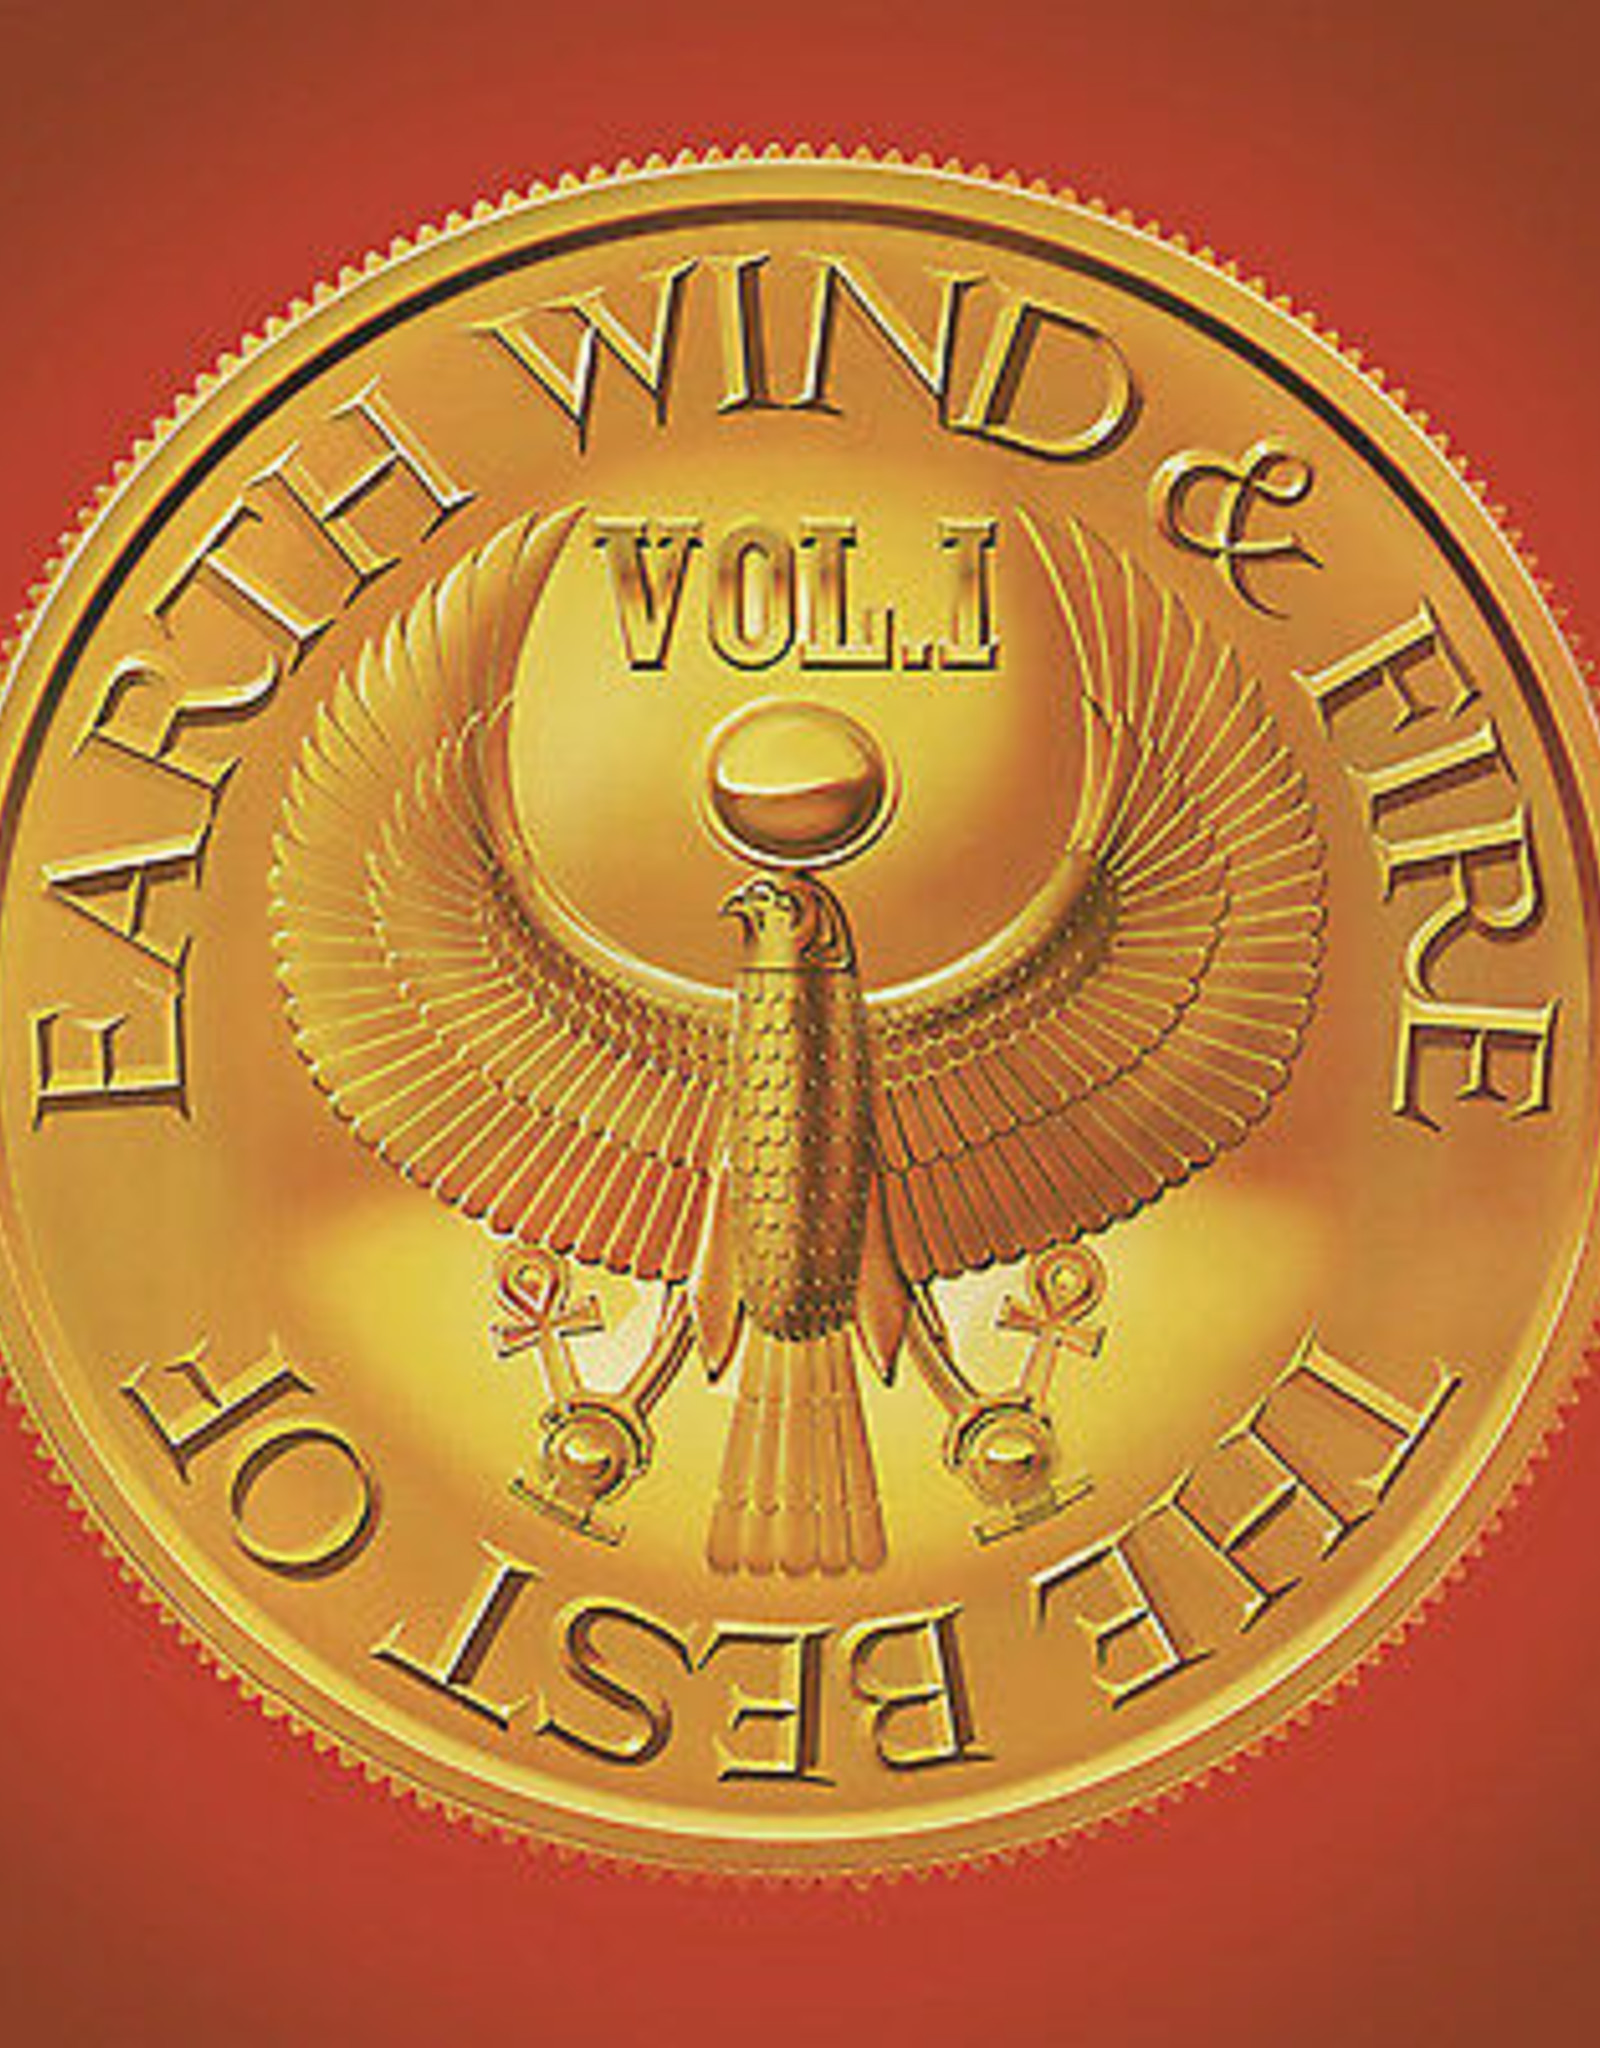 Earth Wind & Fire - Best Of Vol.1